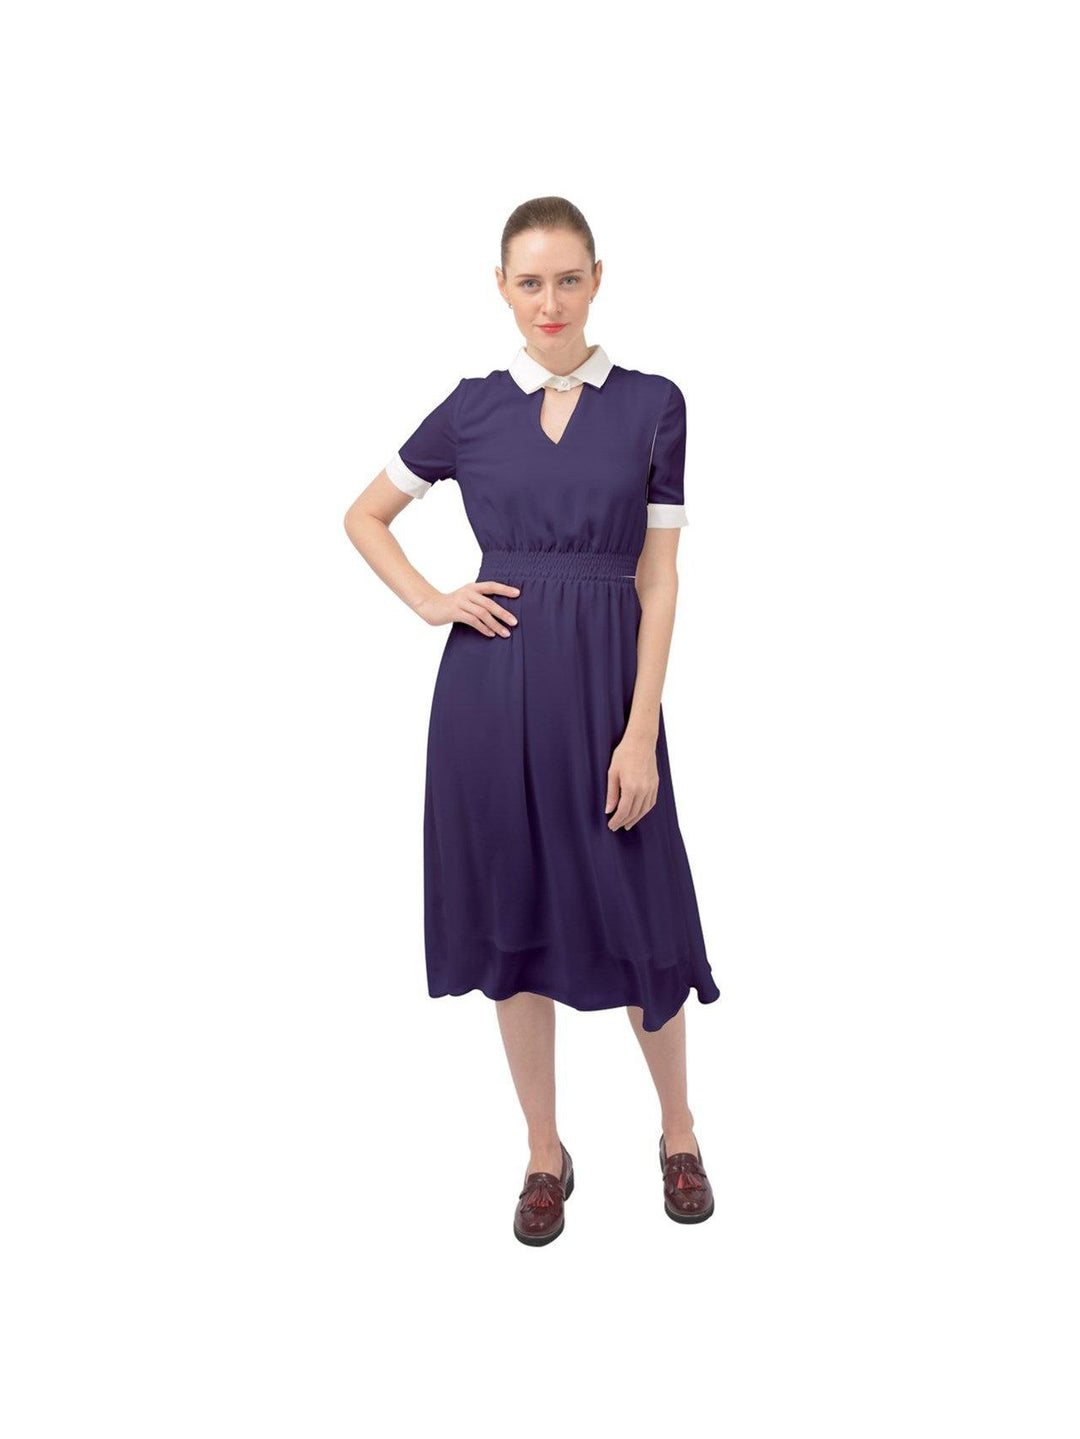 Navy Blue Ava 1940s Style Vintage Dress